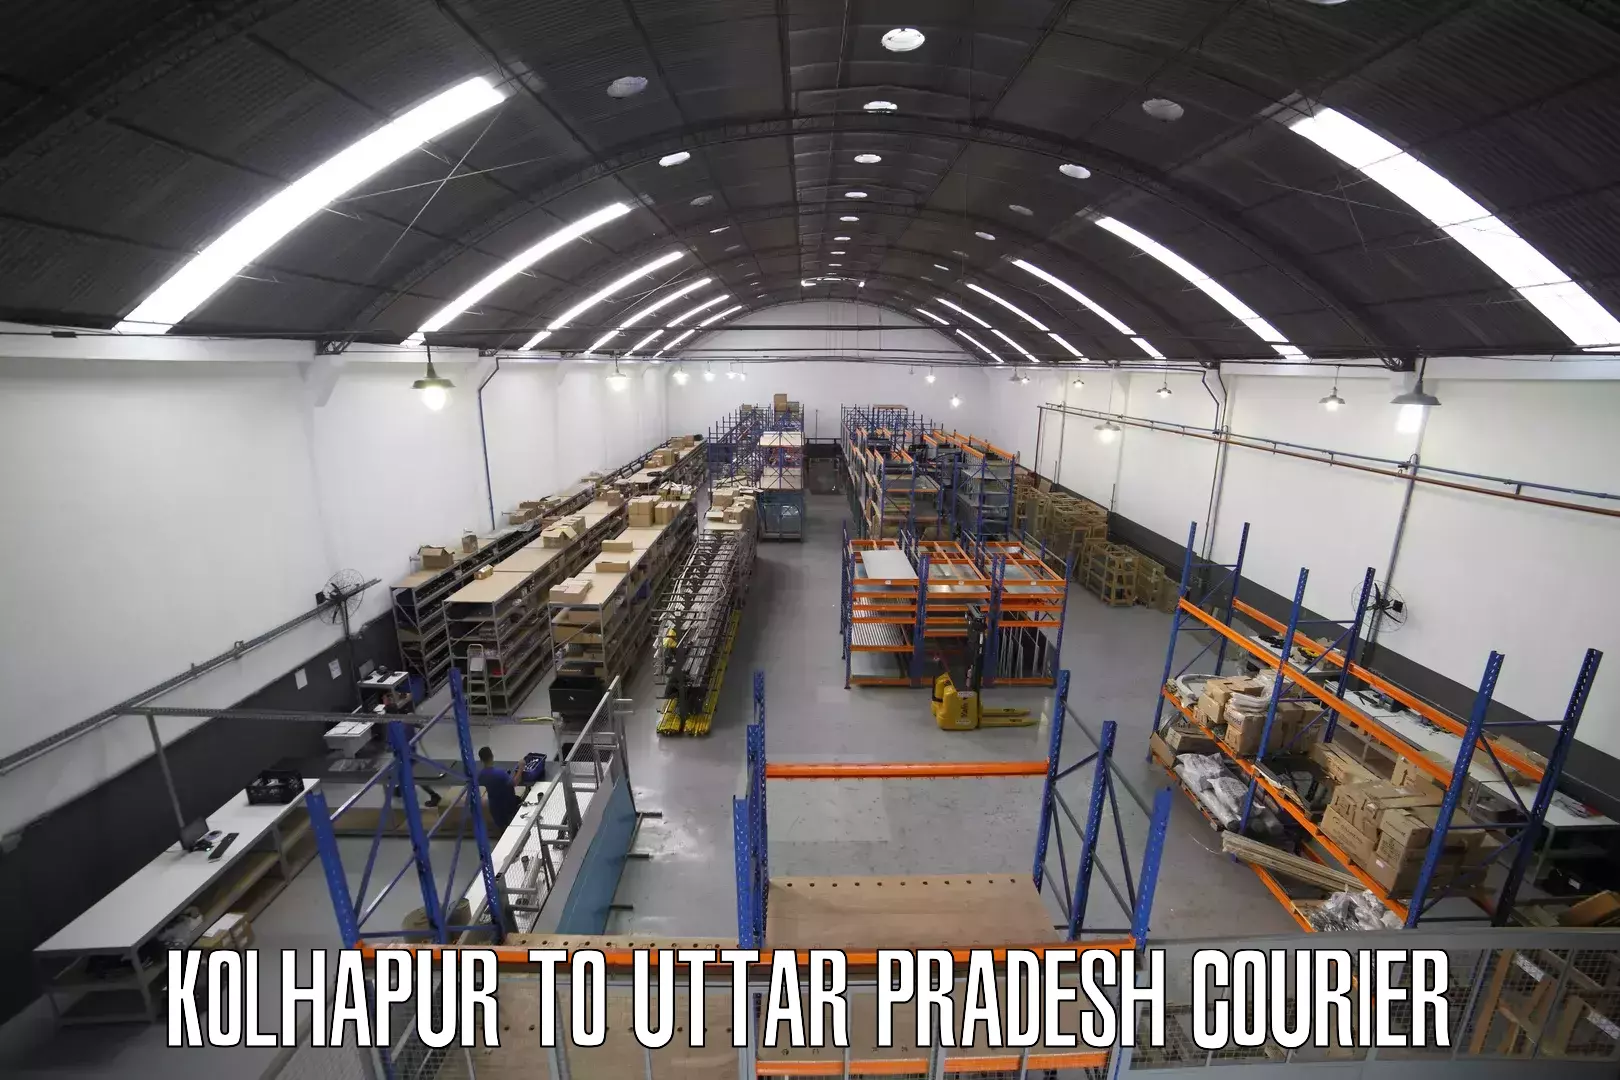 Small business couriers Kolhapur to Uttar Pradesh